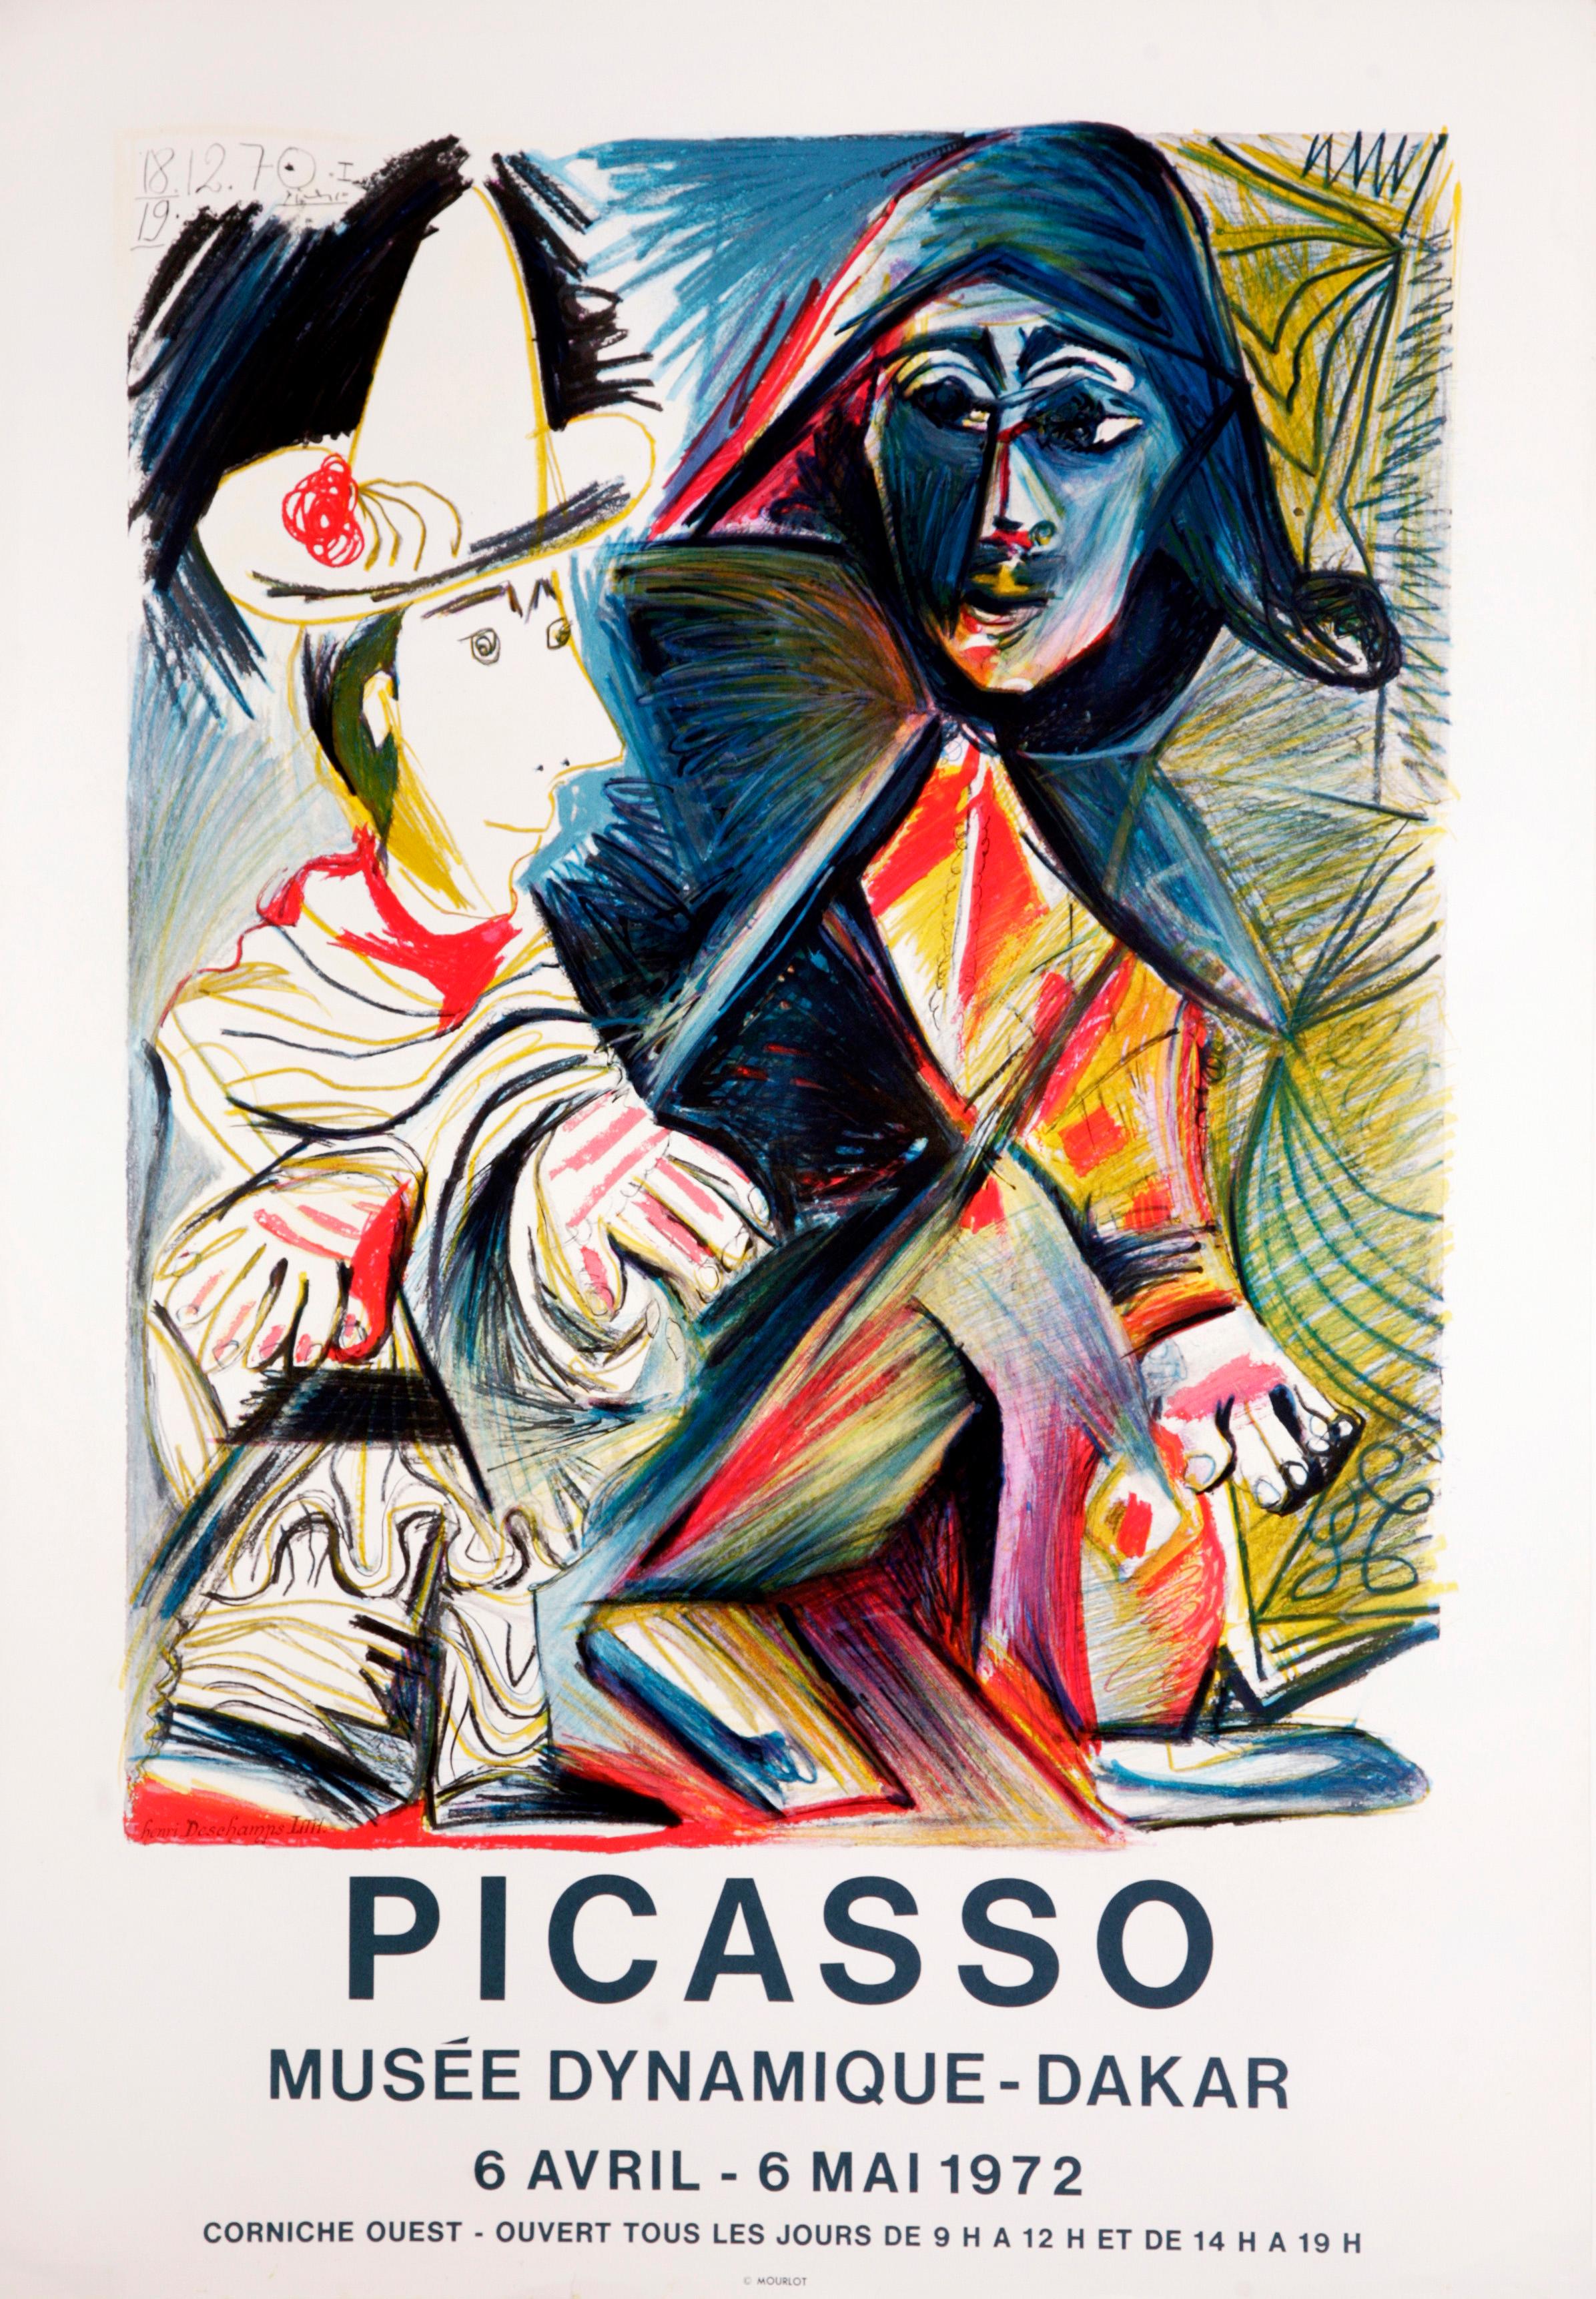 Pierrot et Arlequin - Musée Dynamique de Dakar (after) Pablo Picasso, 1972